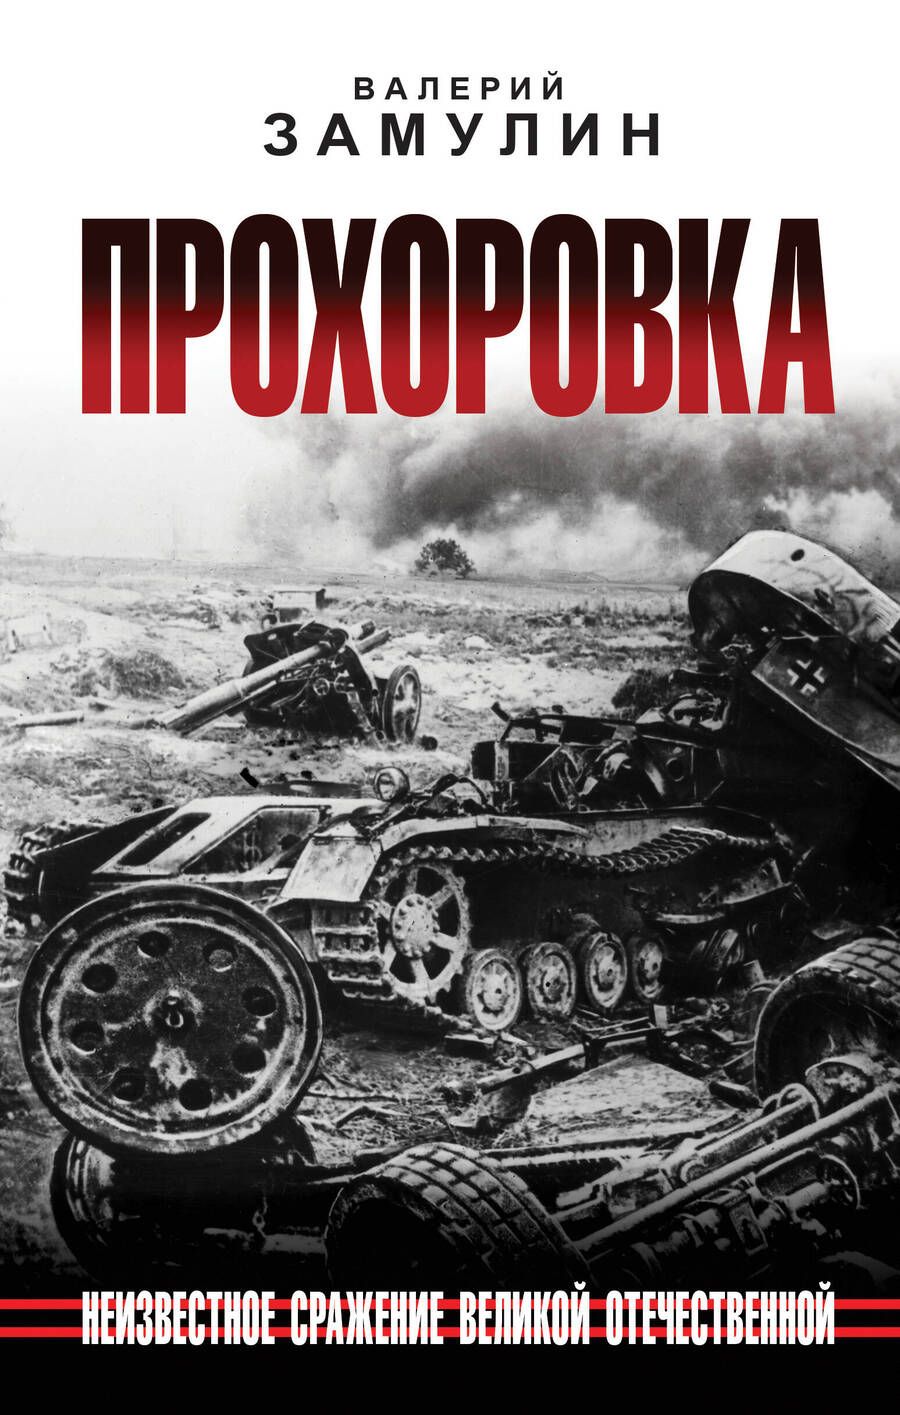 Обложка книги "Замулин: Прохоровка. Неизвестное сражение Великой Отечественной Войны"